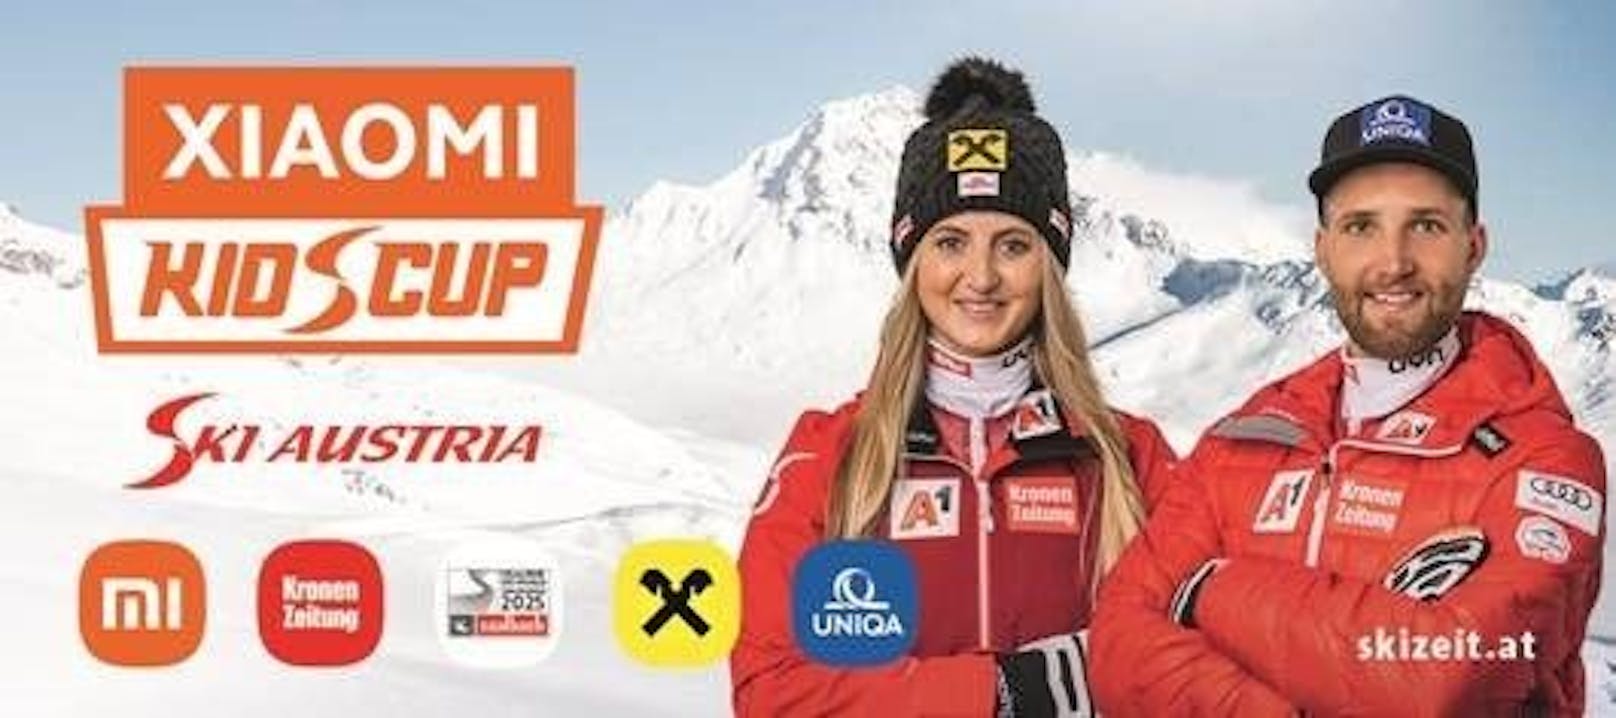 Beim Xiaomi KidsCup 2022 sind heuer zudem auch die beiden Ski-Stars Marco Schwarz und Nina Ortlieb mit dabei.